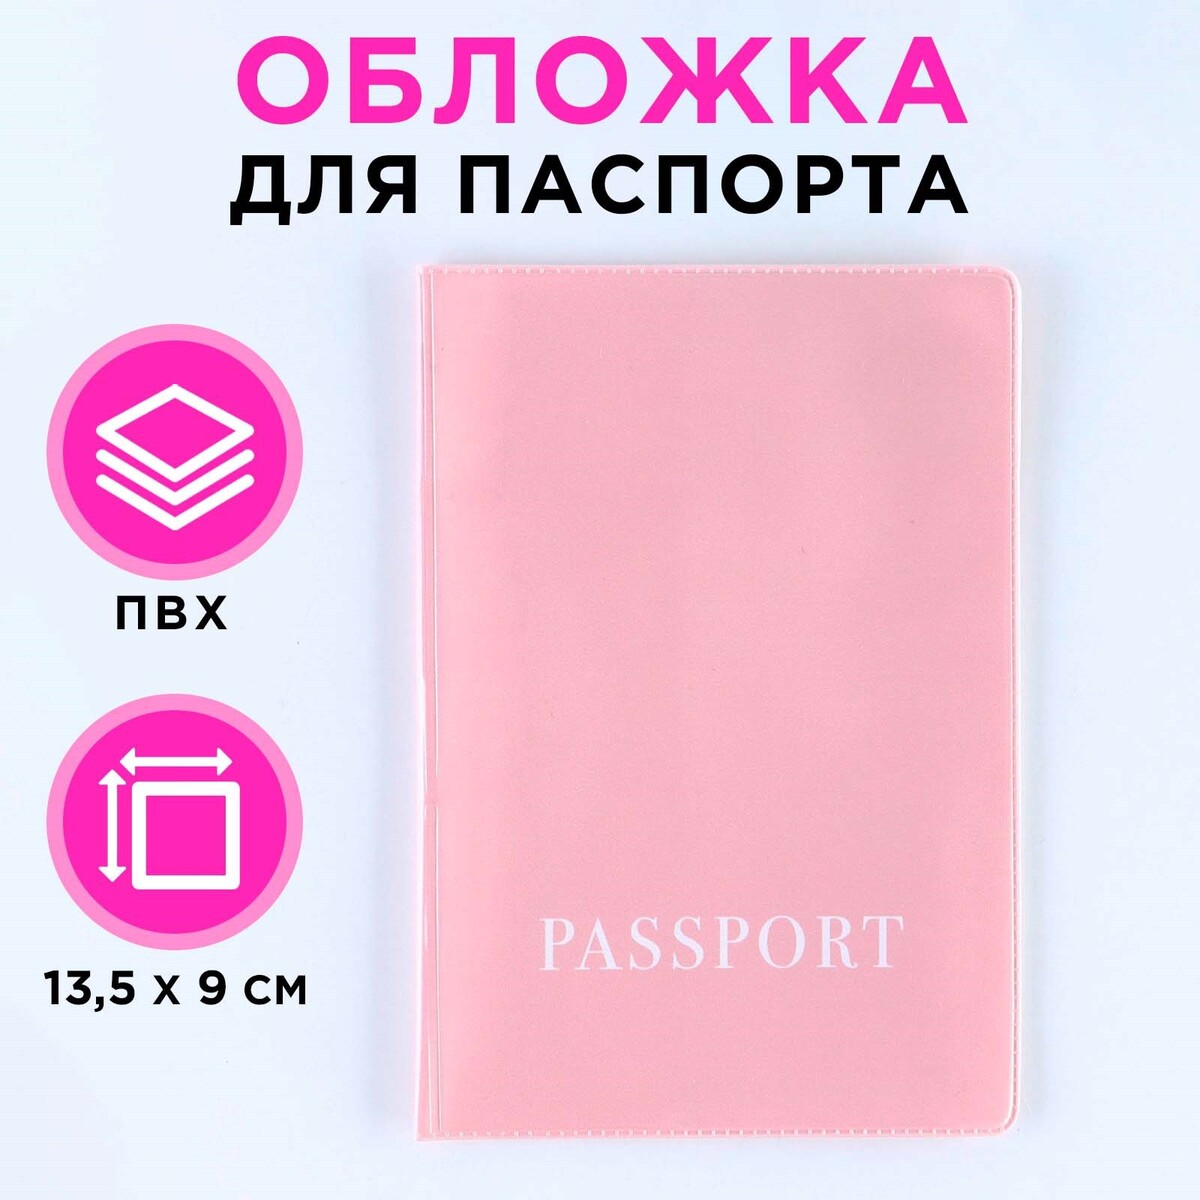 Обложка для паспорта, пвх, оттенок пыльная роза обложка для паспорта пвх оттенок кардинал